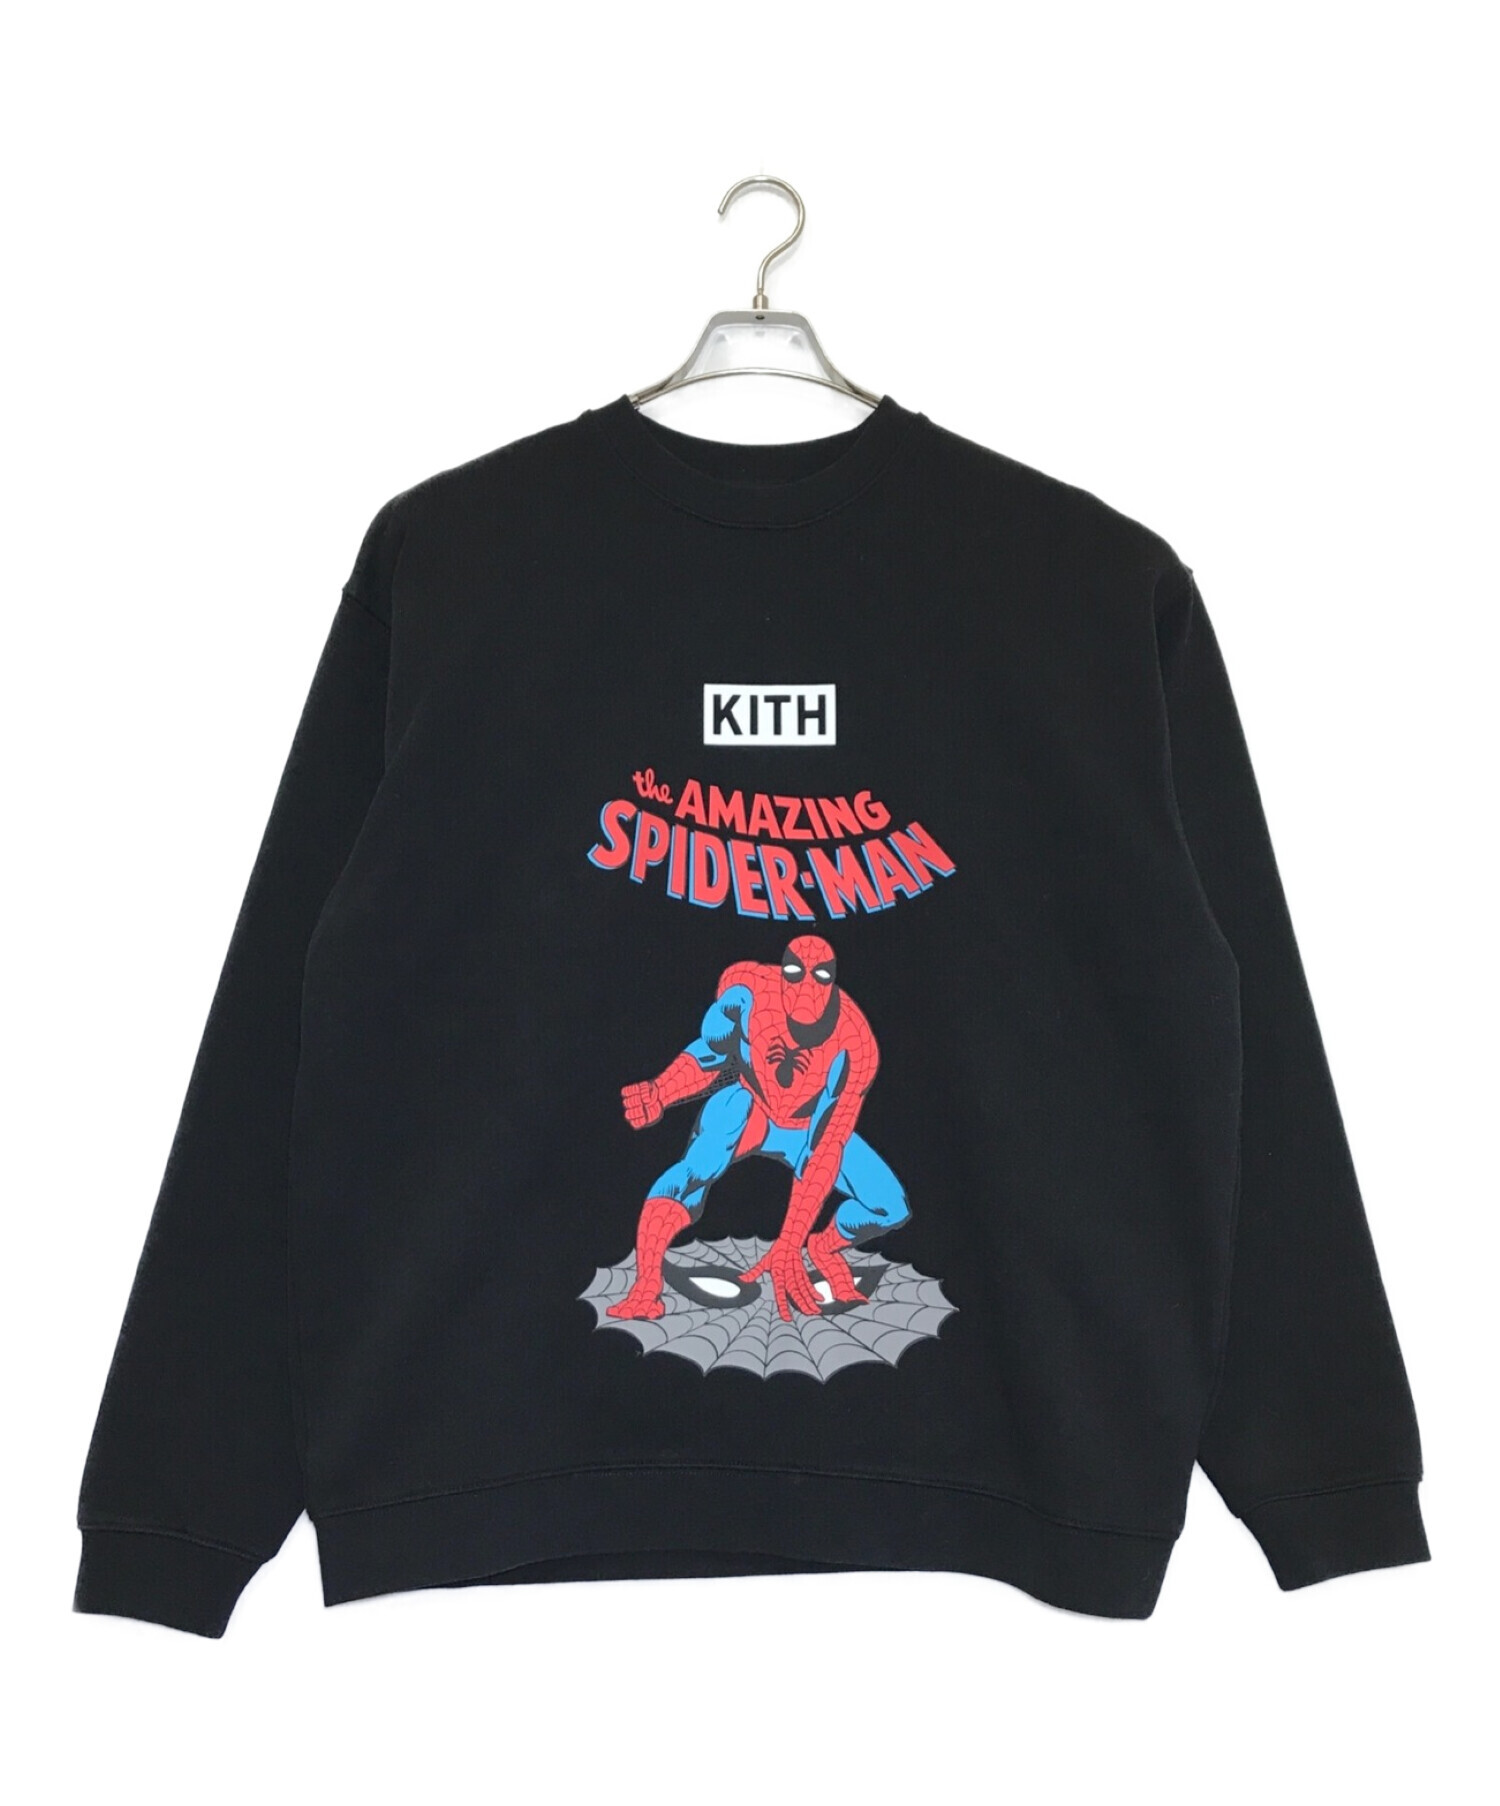 Kith × Marvel Spider-Man (キス×マーベルスパイダーマン) スパイダーマンスウェット ブラック サイズ:下記参照